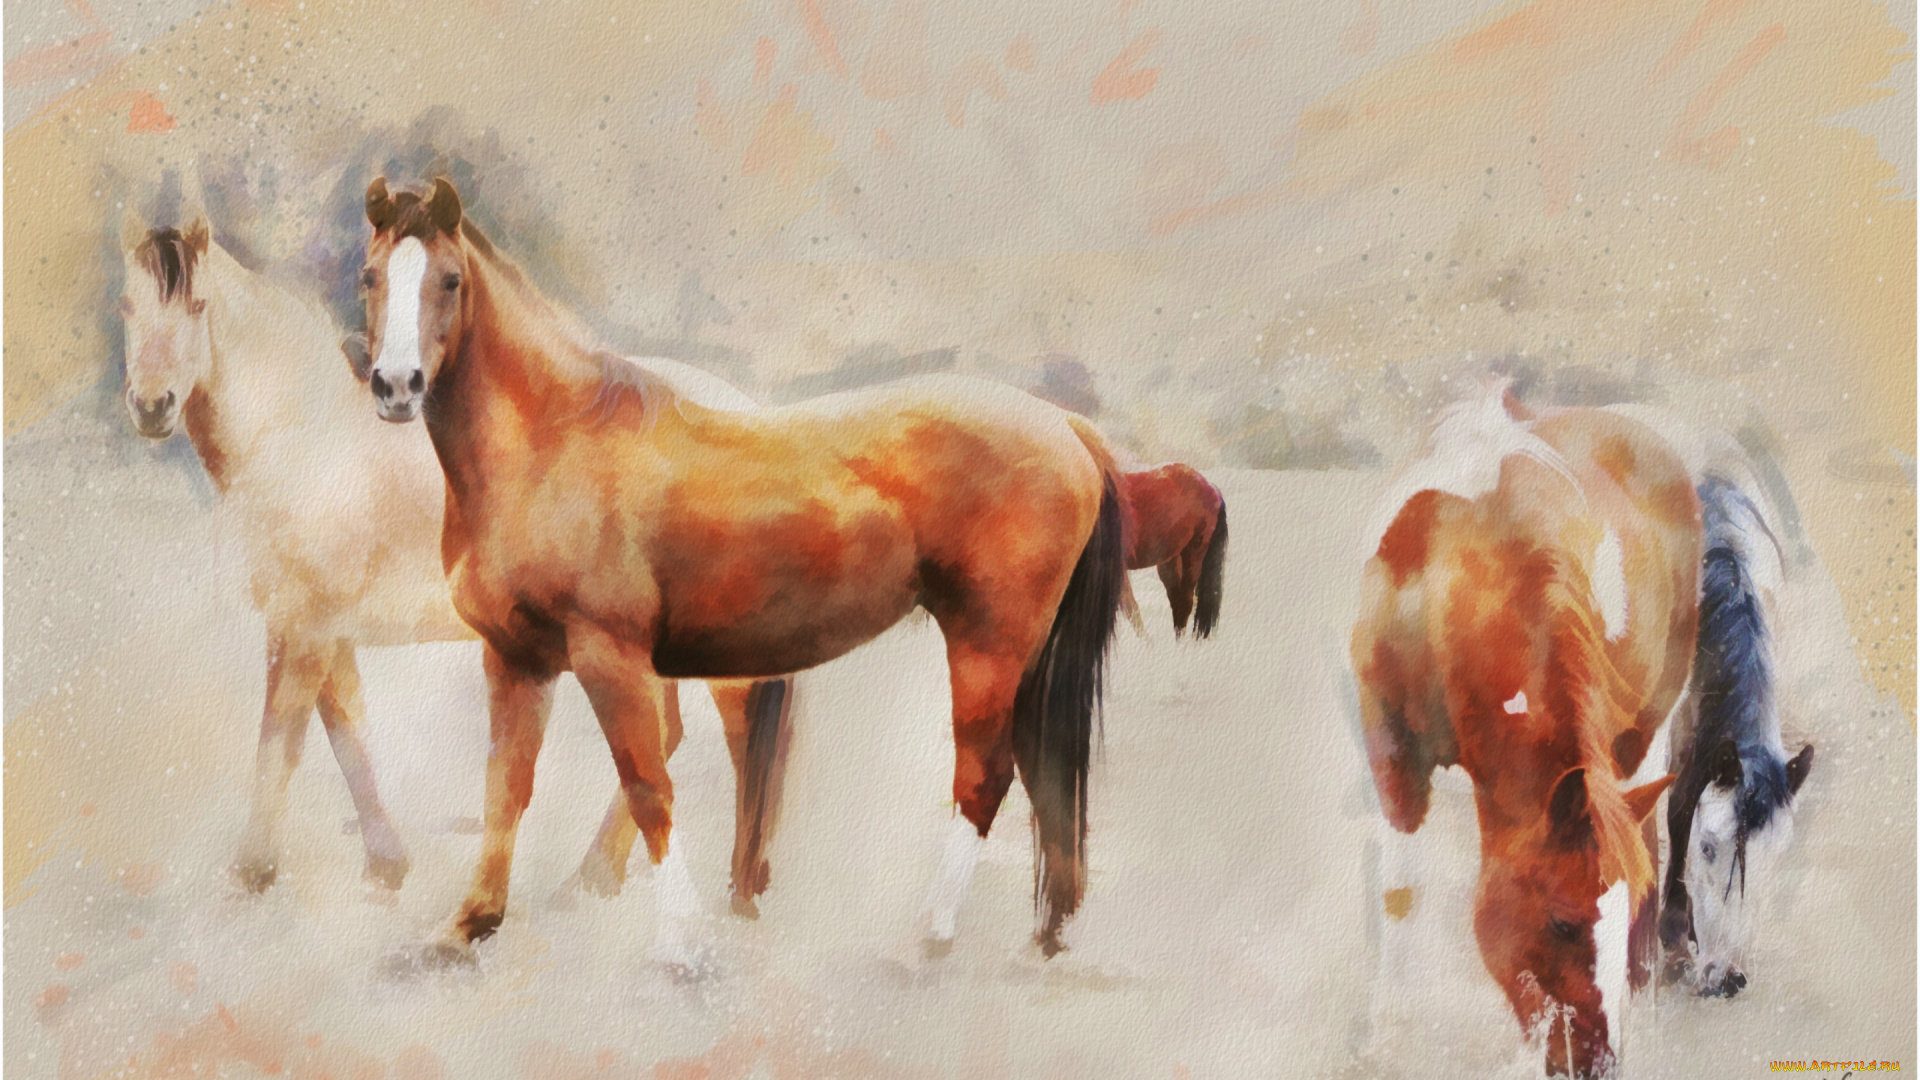 рисованное, животные, , лошади, поле, пасутся, пастельные, тона, кони, лошади, графика, живопись, картина